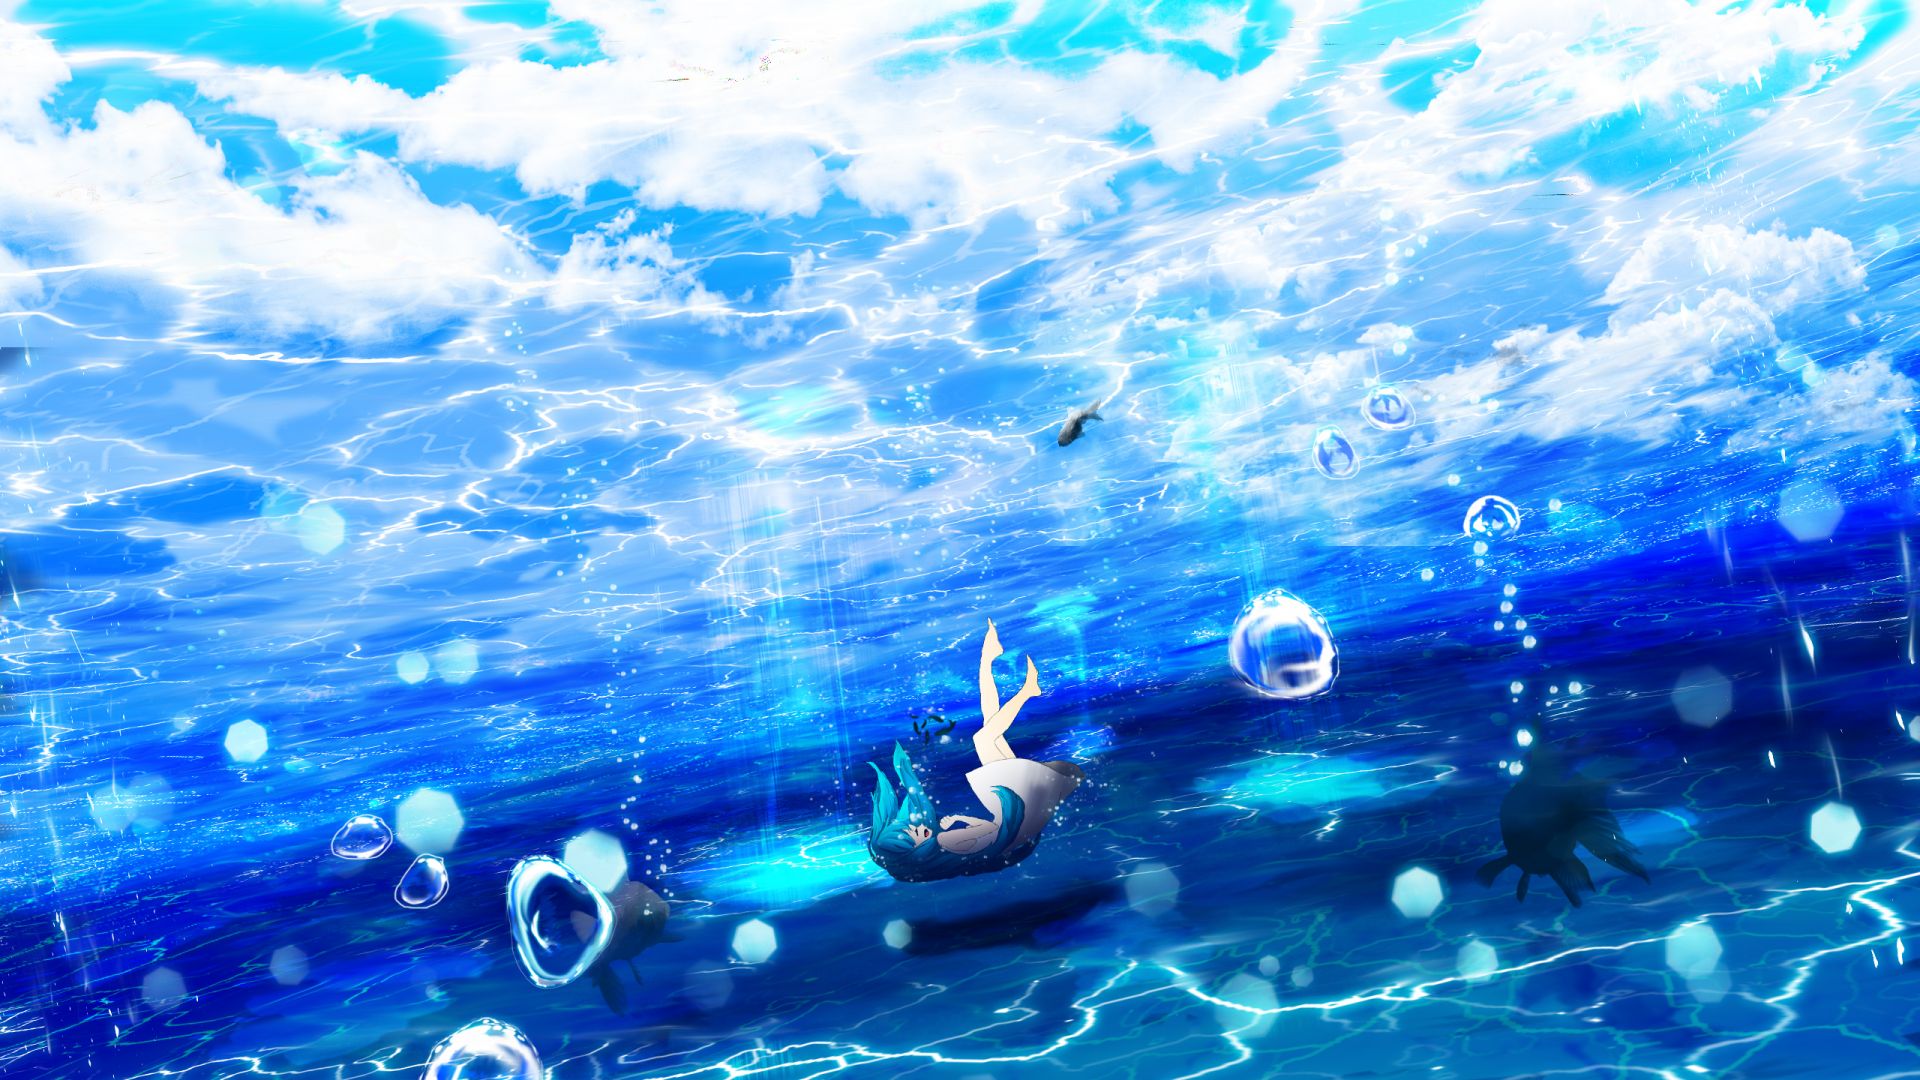 Underwater violinist wallpaper  Anime wallpapers  22596  Live wallpapers  Anime Anime wallpaper